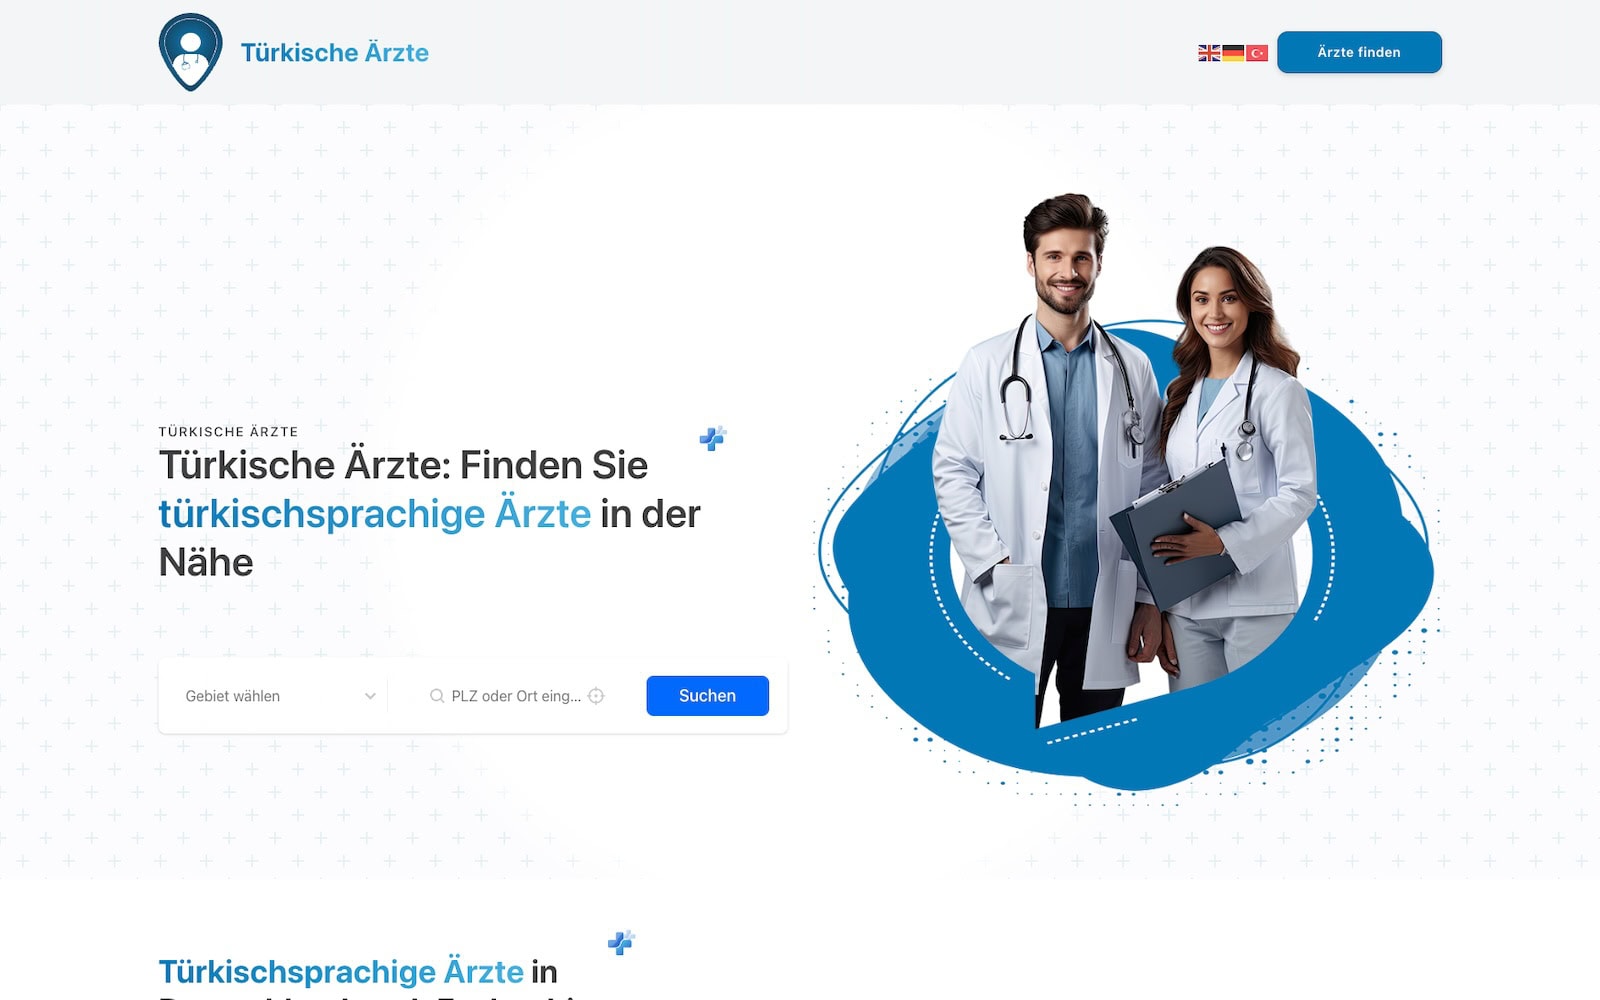 Eine Homepage mit zwei Ärzten und einer Suchfunktion. Sie enthält Text in Deutsch und bietet oben rechts eine Option zum Umschalten der Sprache.